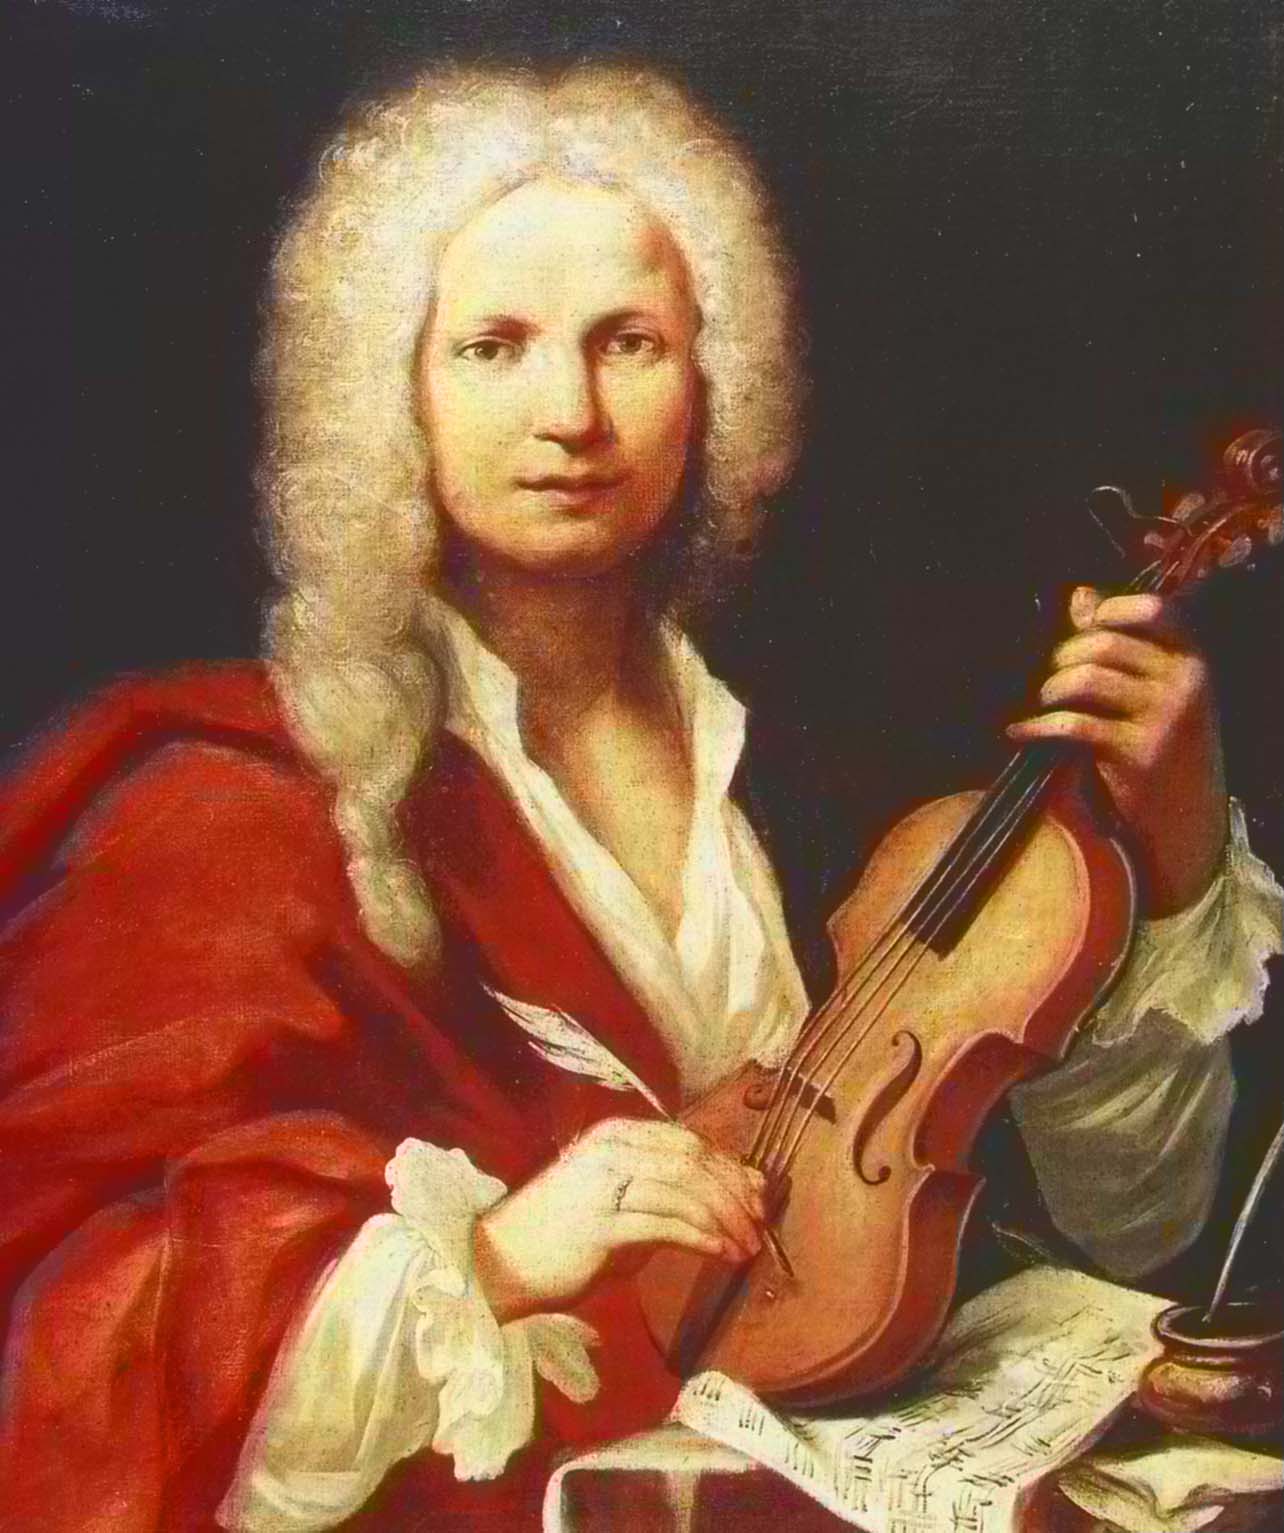 Antonio_Vivaldi_1678-1741.jpg